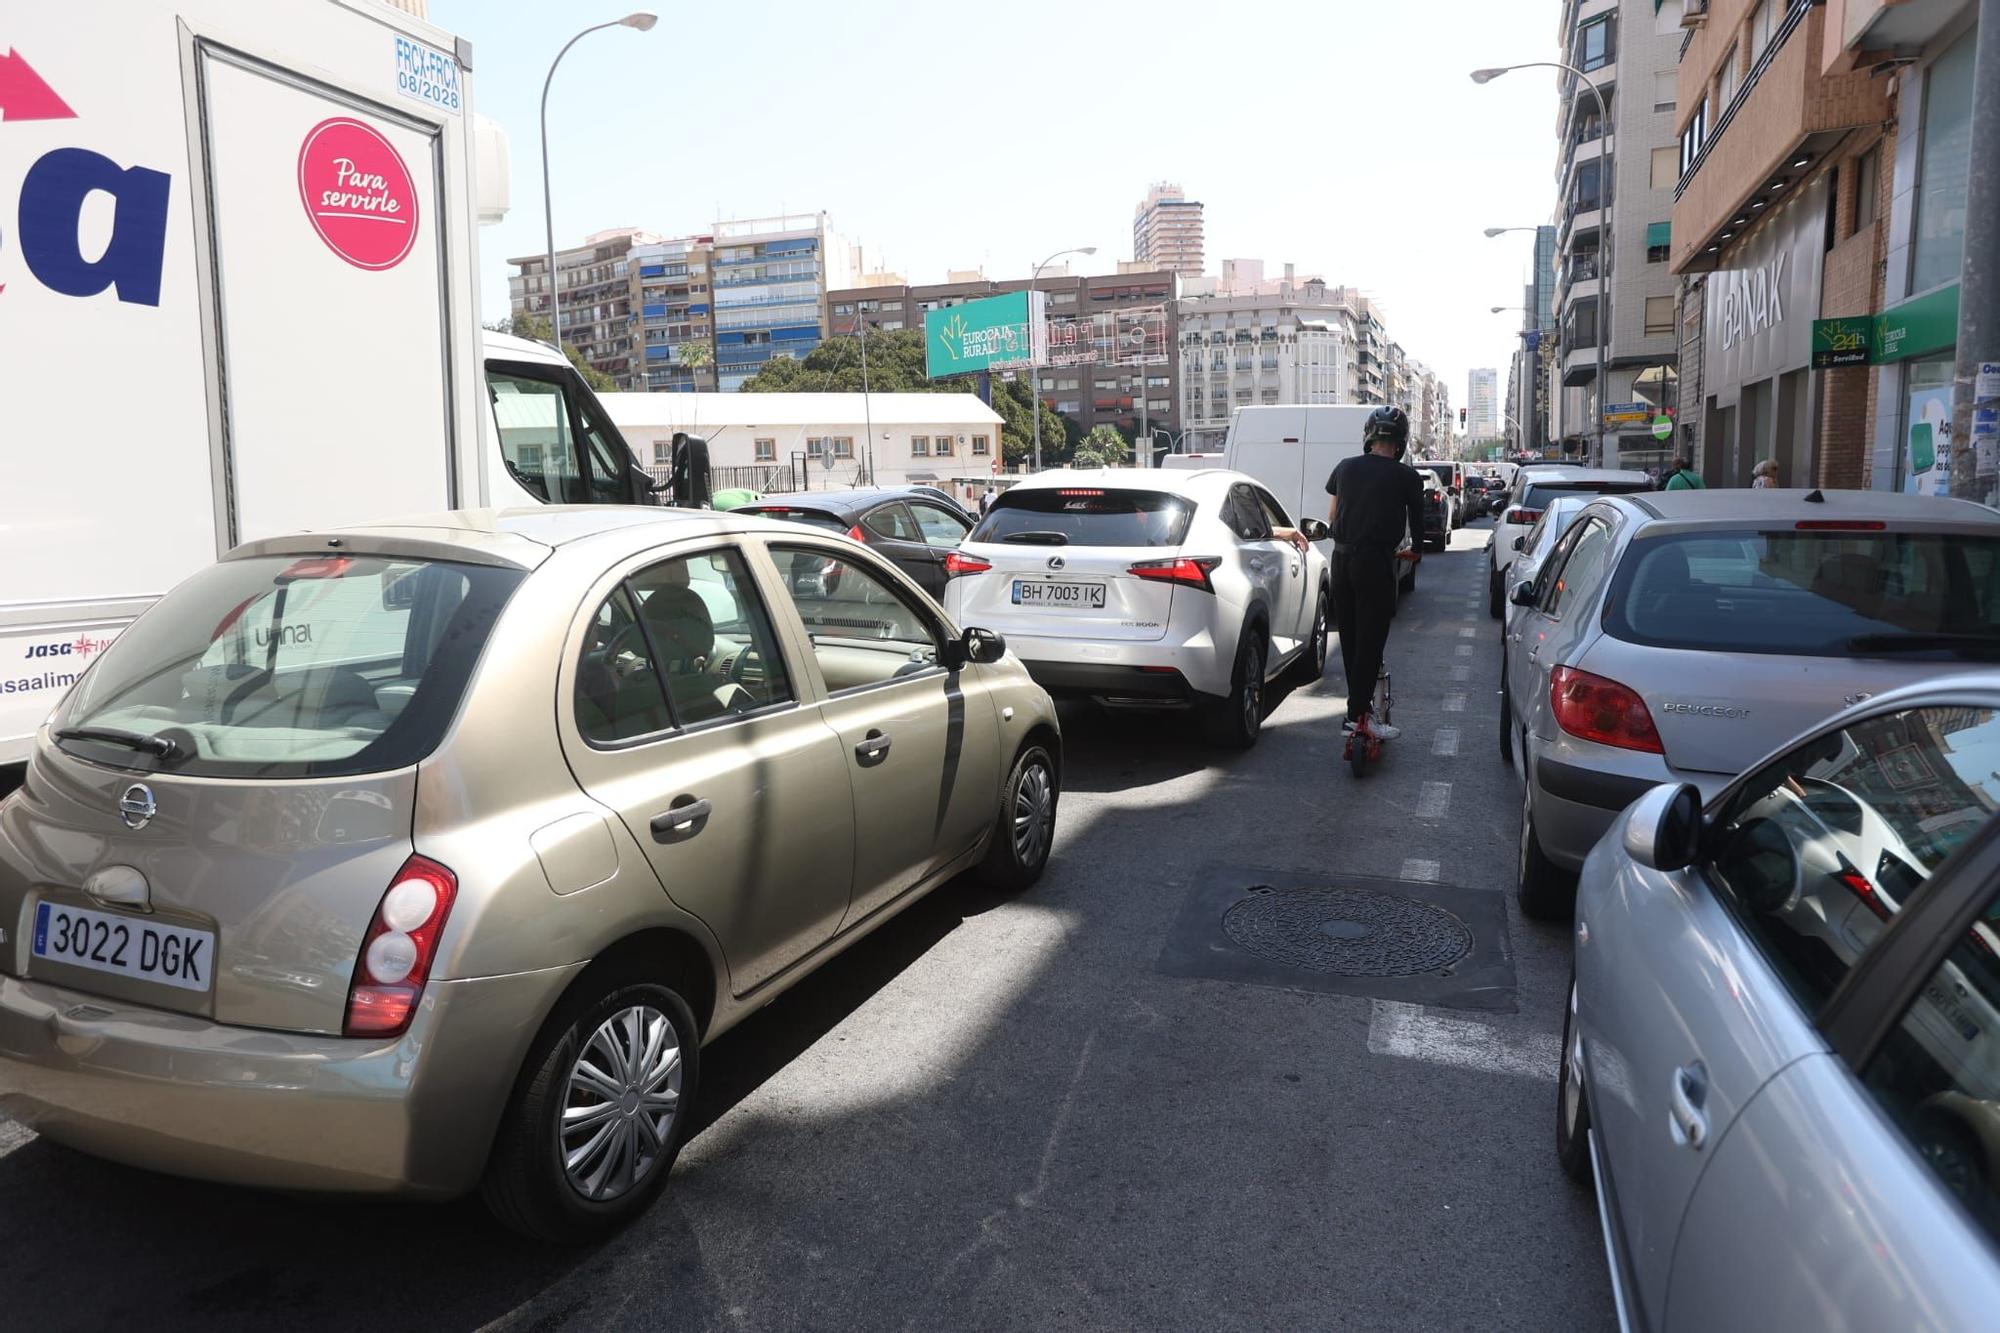 Continúa el colapso en Alicante: interminables atascos en las principales calles de la ciudad